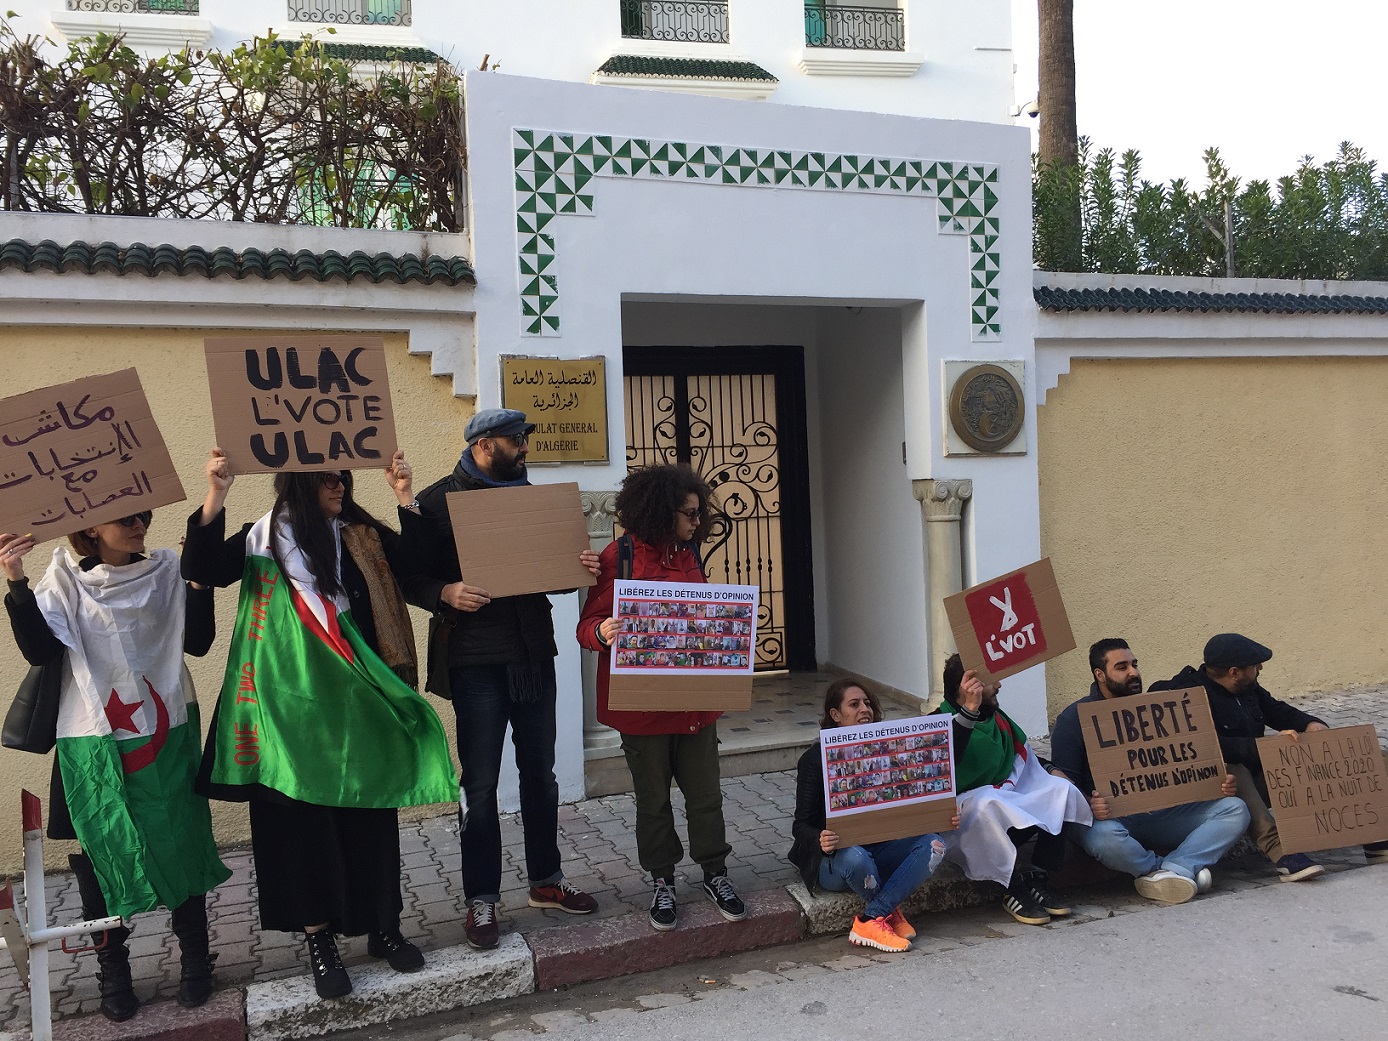 Rassemblement contre l’élection présidentielle algérienne devant le consulat algérien à Tunis, le 11 décembre (MEE/ Maryline Dumas)